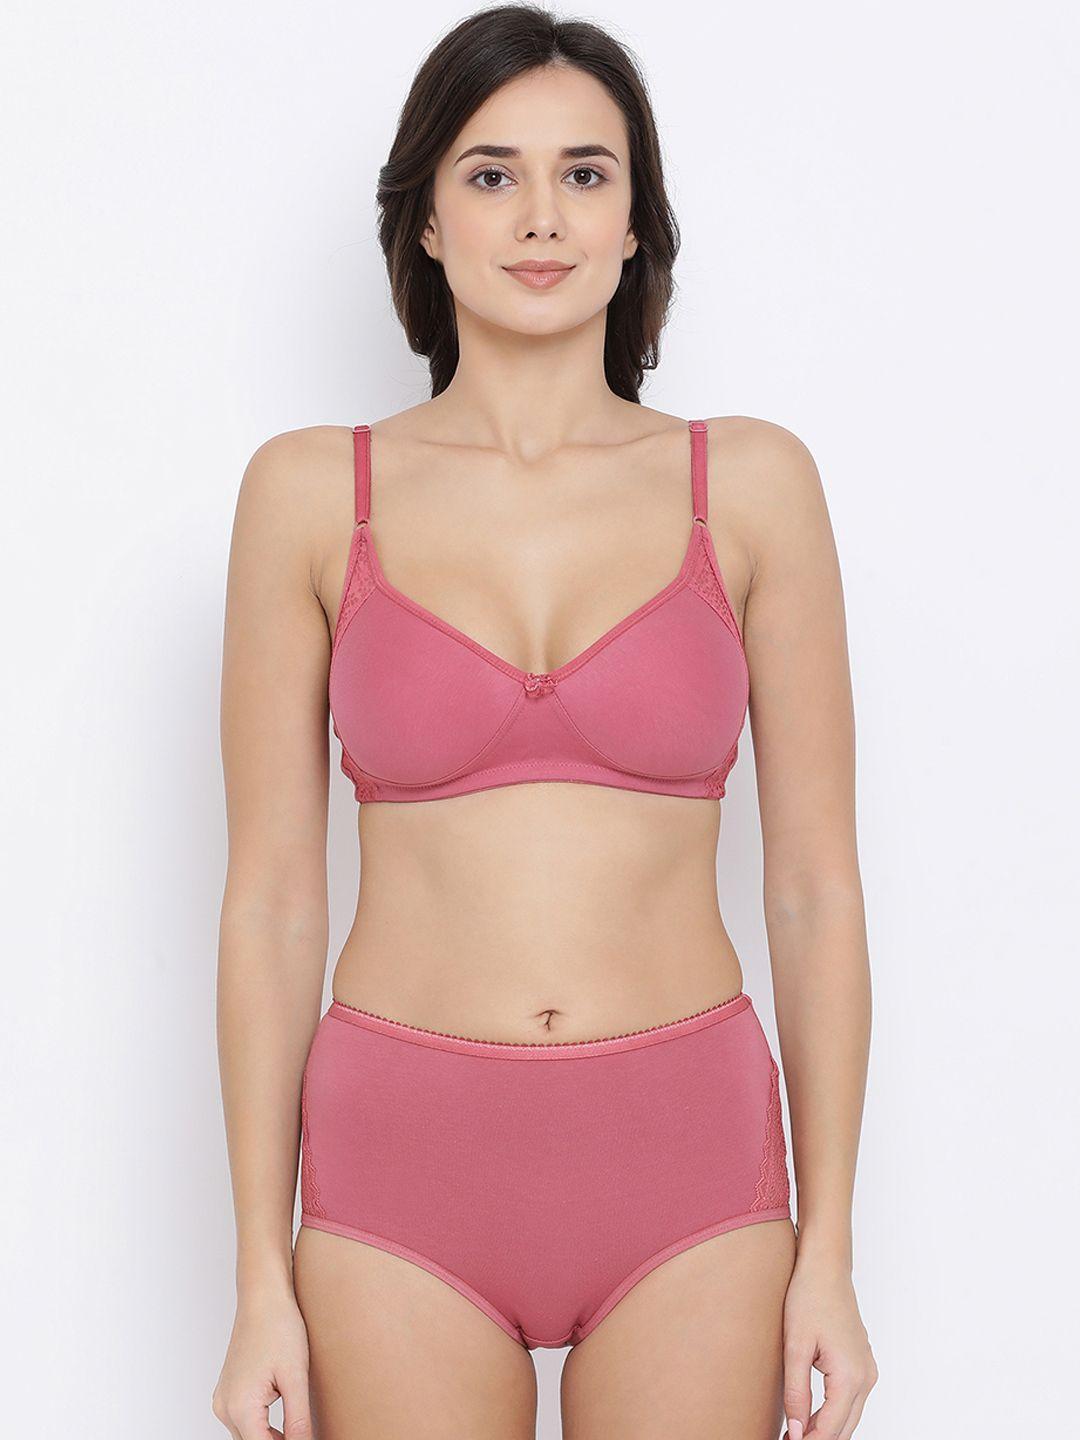 clovia women pink solid lingerie set combp1032